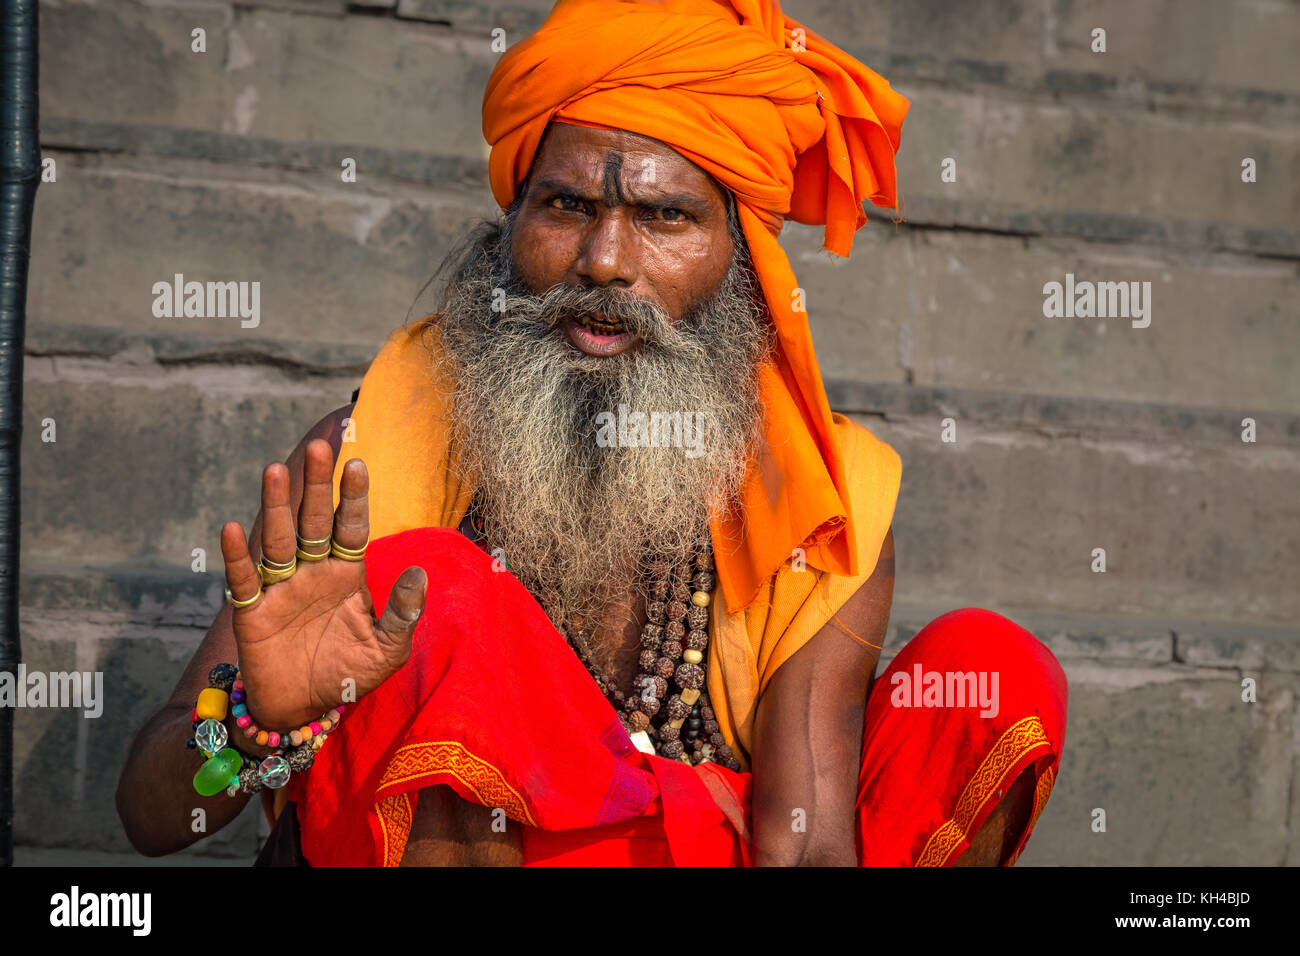 Holy sadhu man pose raising the blessing hand at the Ganga river bank in Varanasi, India. Stock Photo